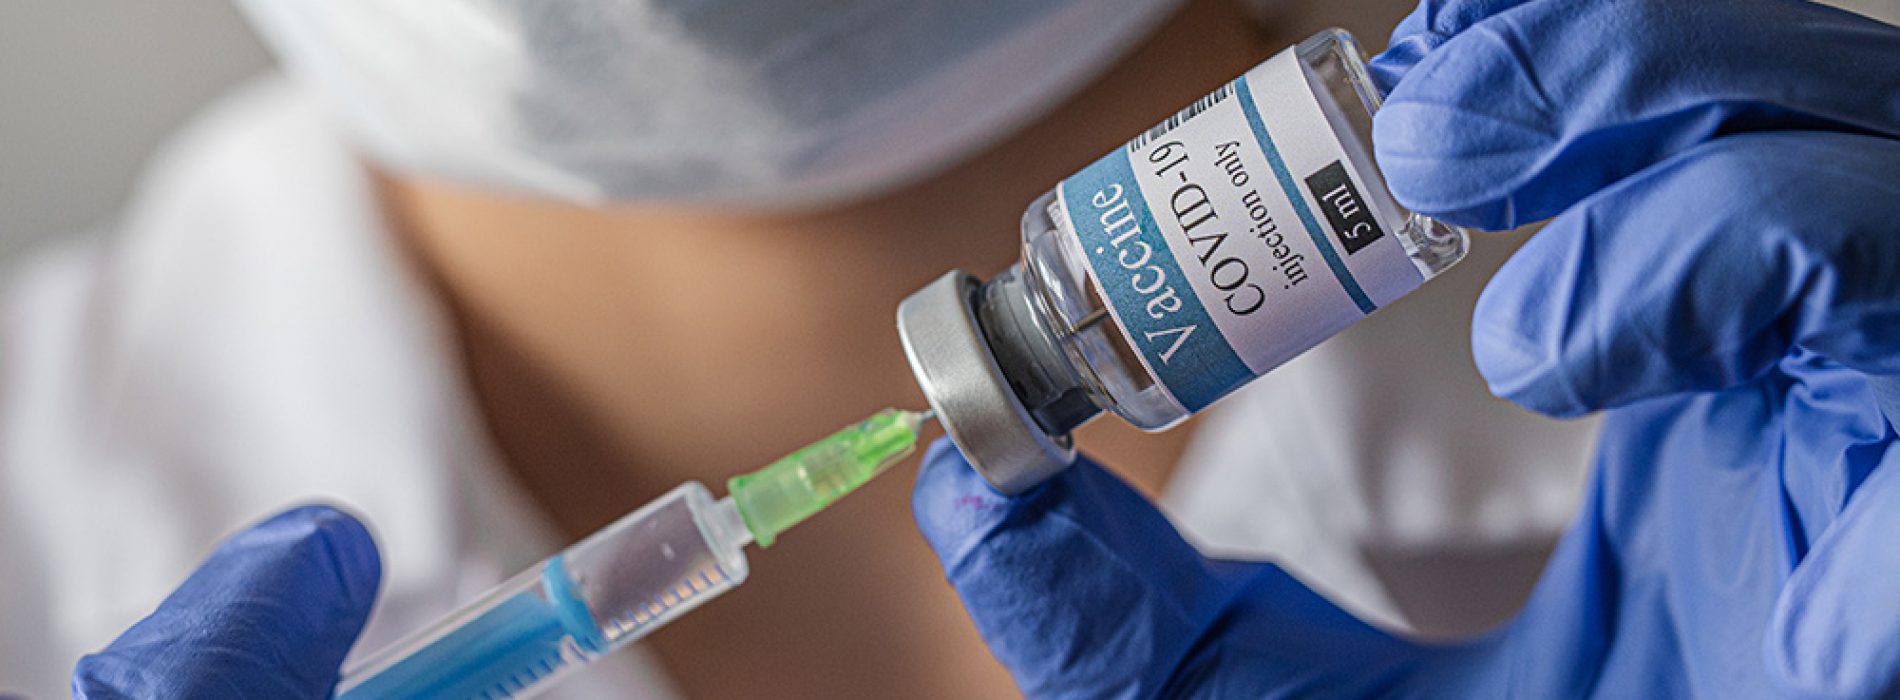 Vaccinfabrikant Pfizer begint alvast met de ‘anti-vaxxers’ te beschuldigen waarom hun vaccin het coronavirus niet stopt